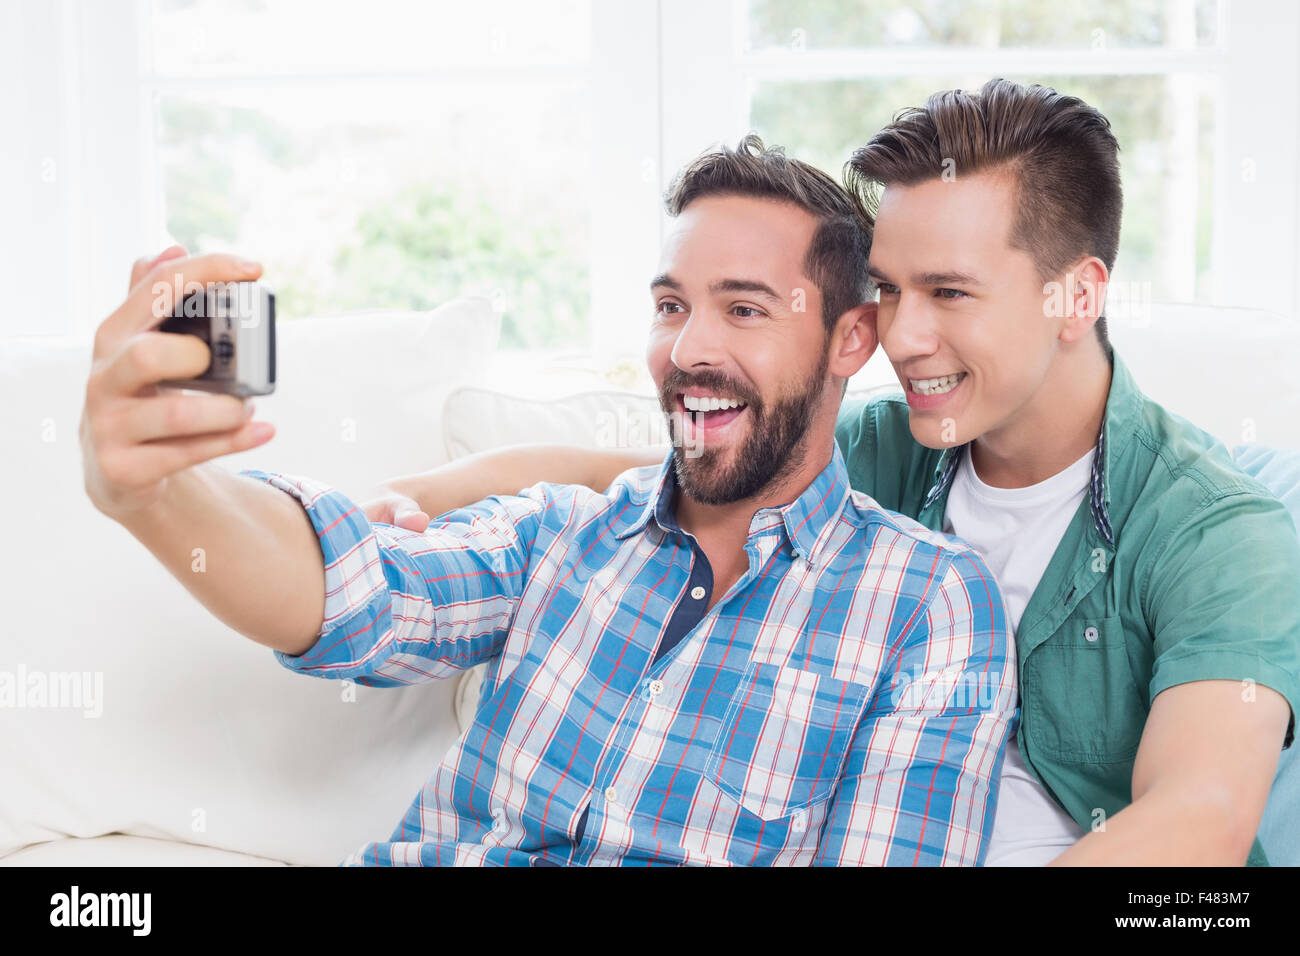 Männer selfie